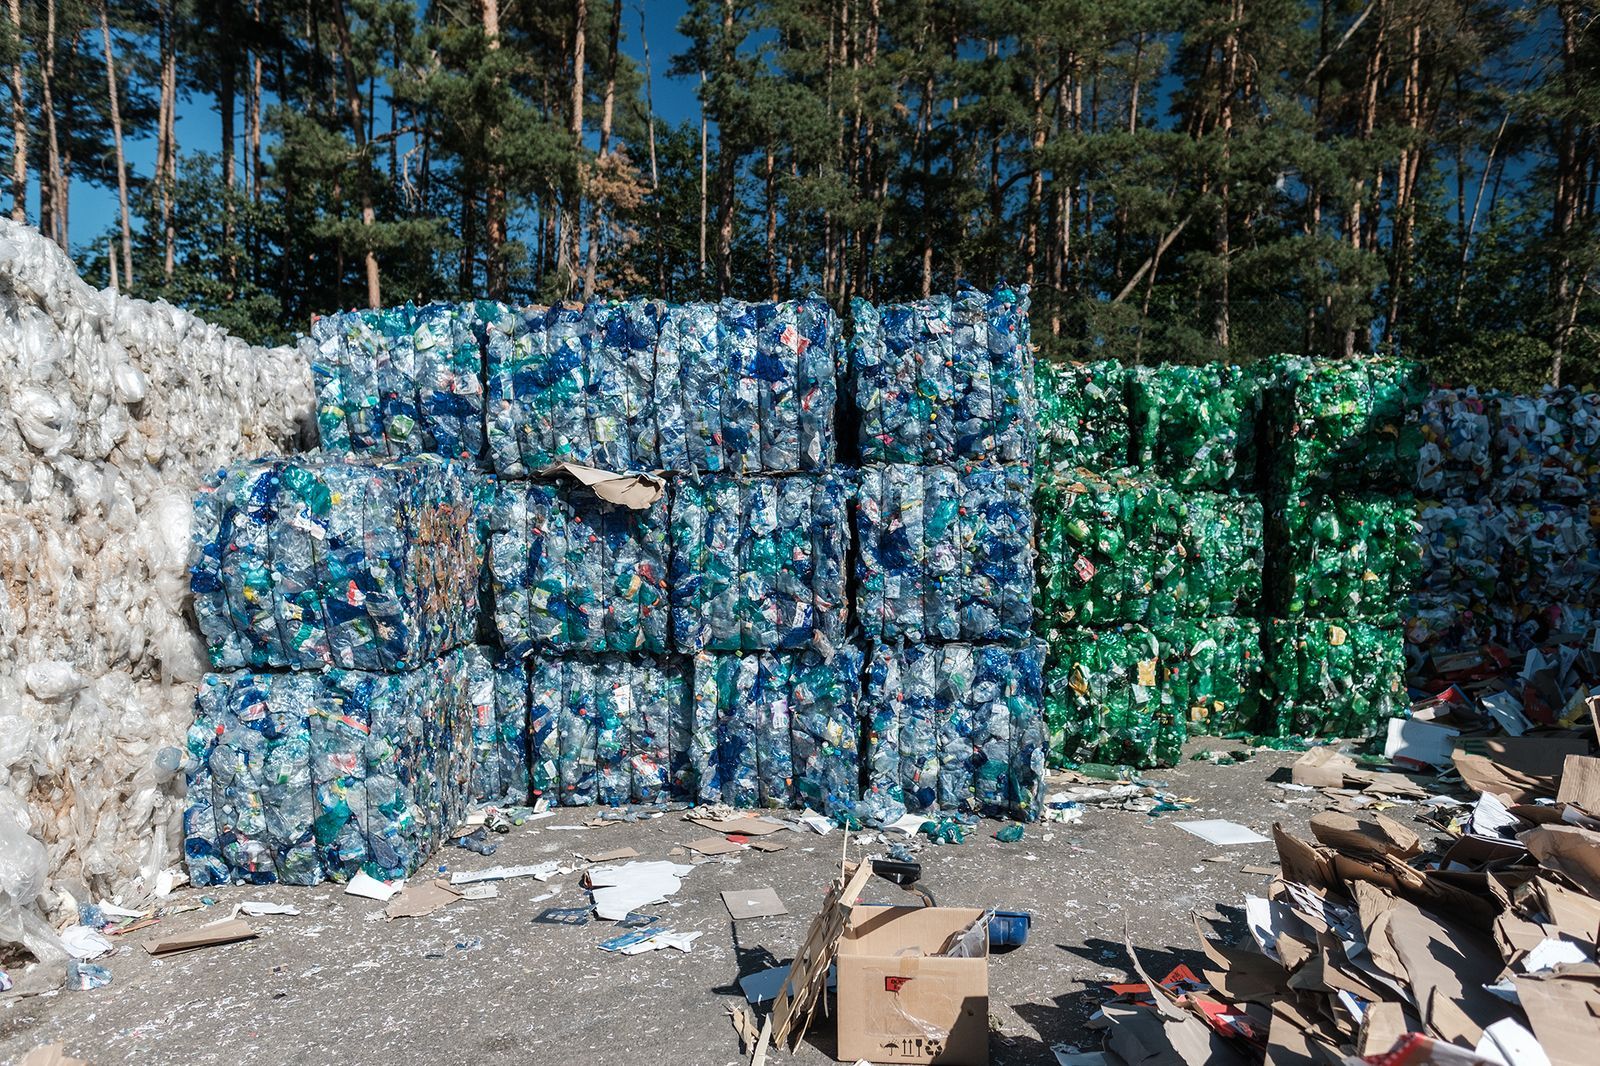 dotřídění Písek Život PET lahve lahev plast recyklace KMV